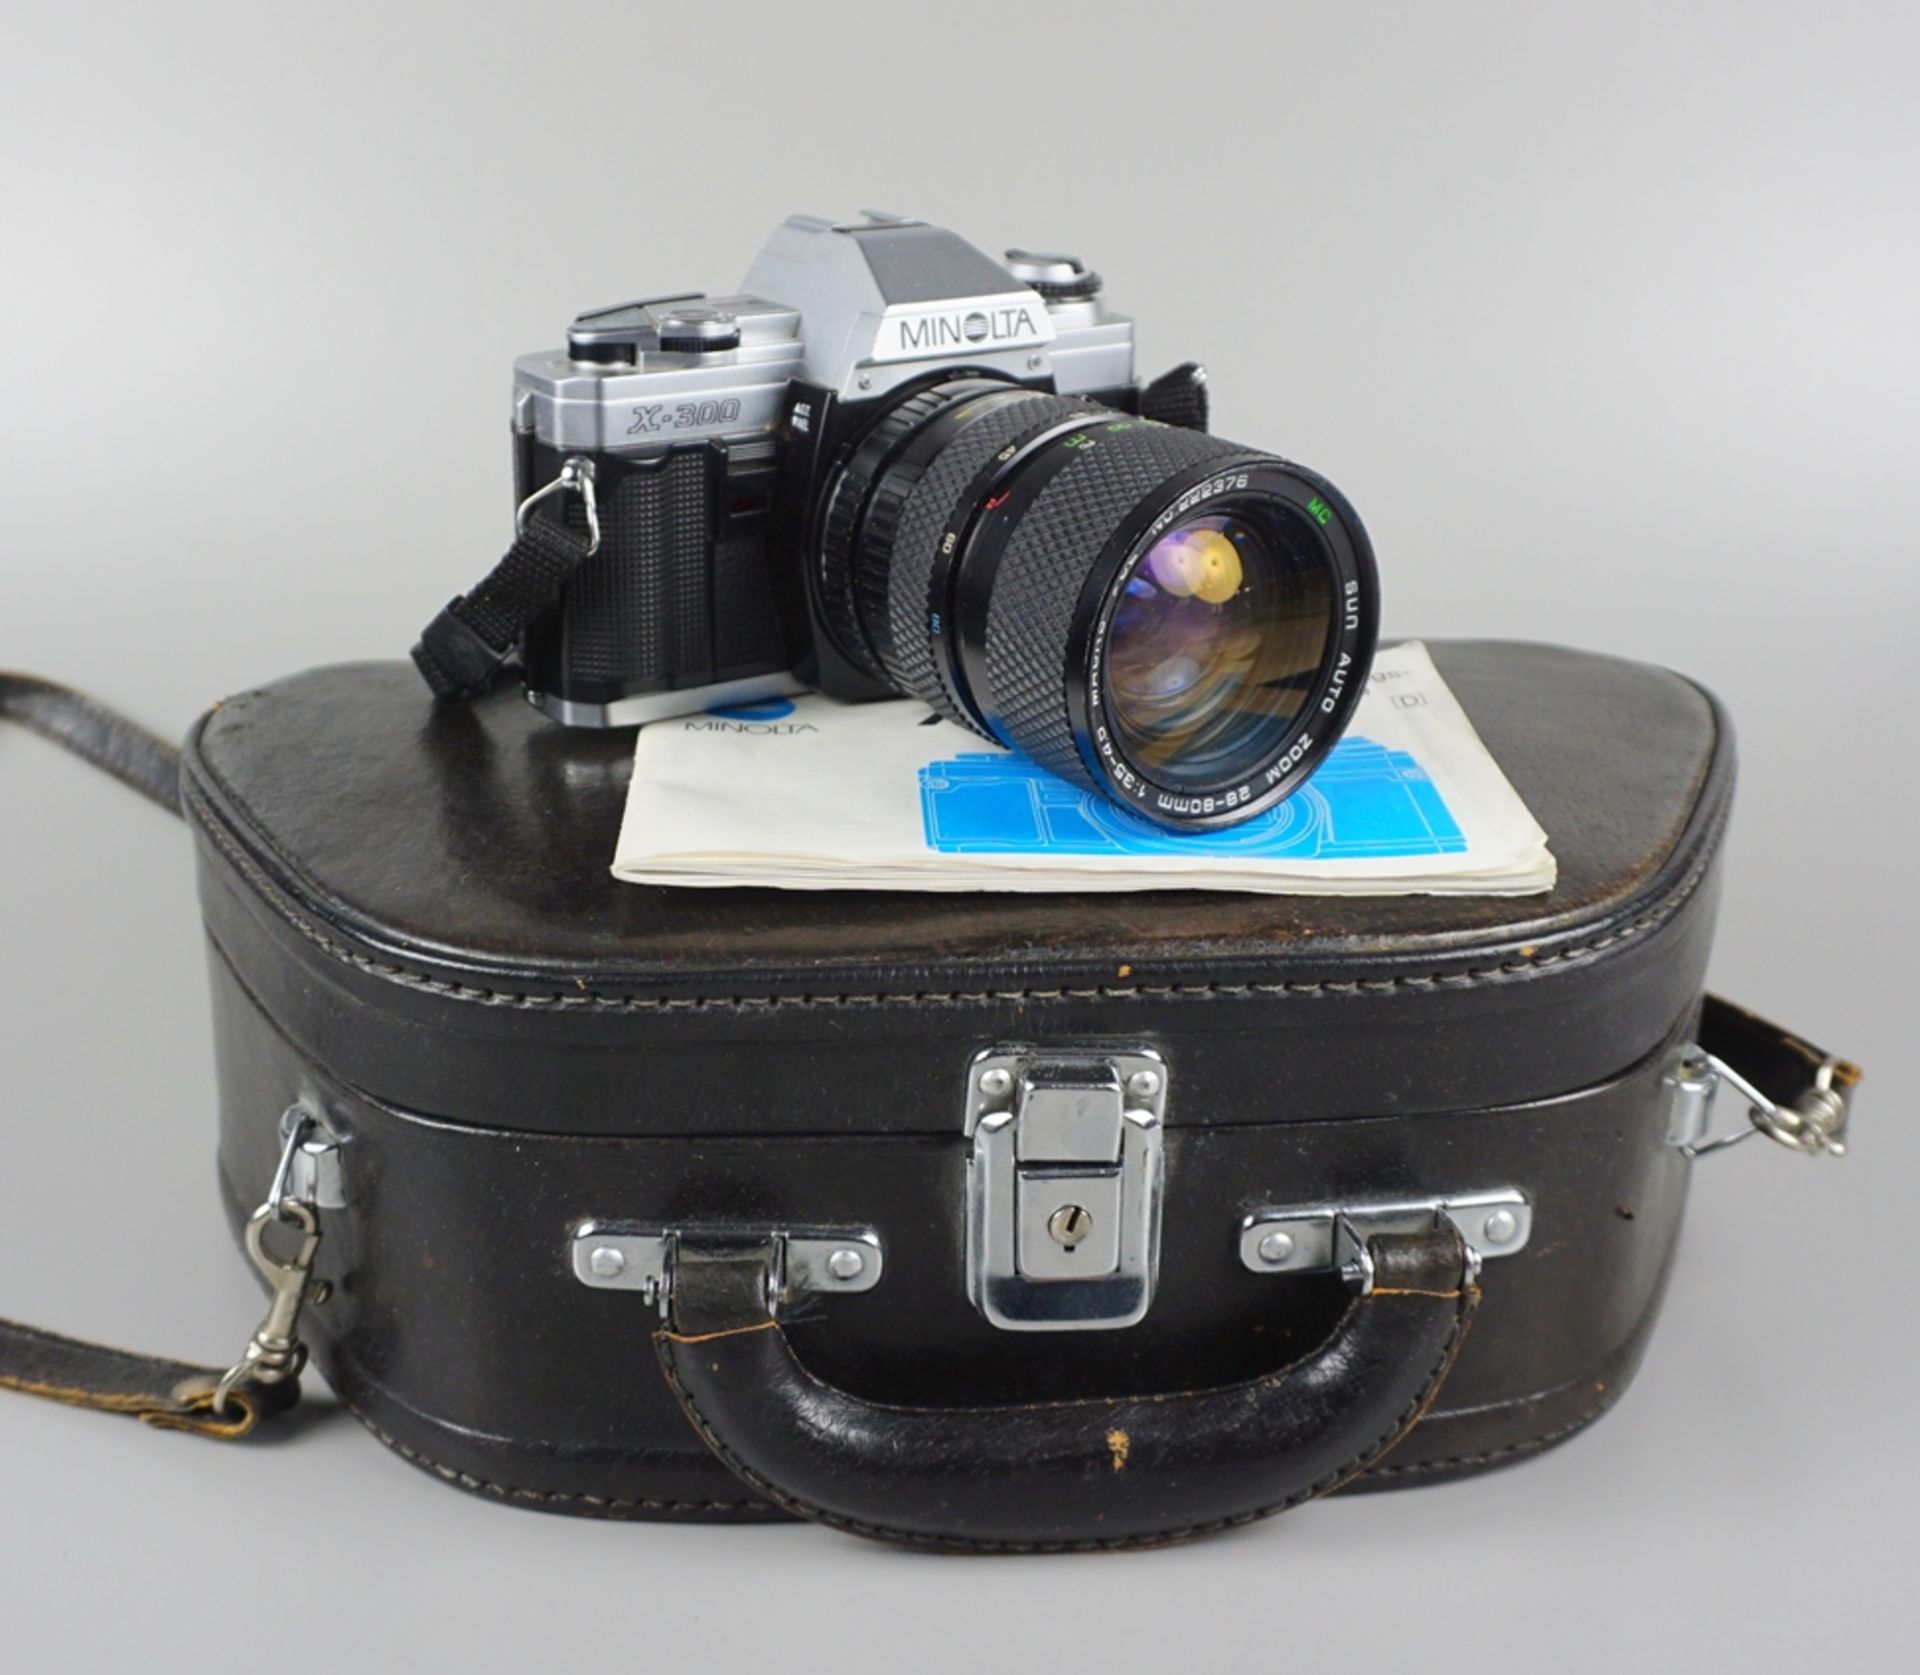 Spiegelreflexkamera Minolta X-300 mit Zubehör, 1980er Jahre